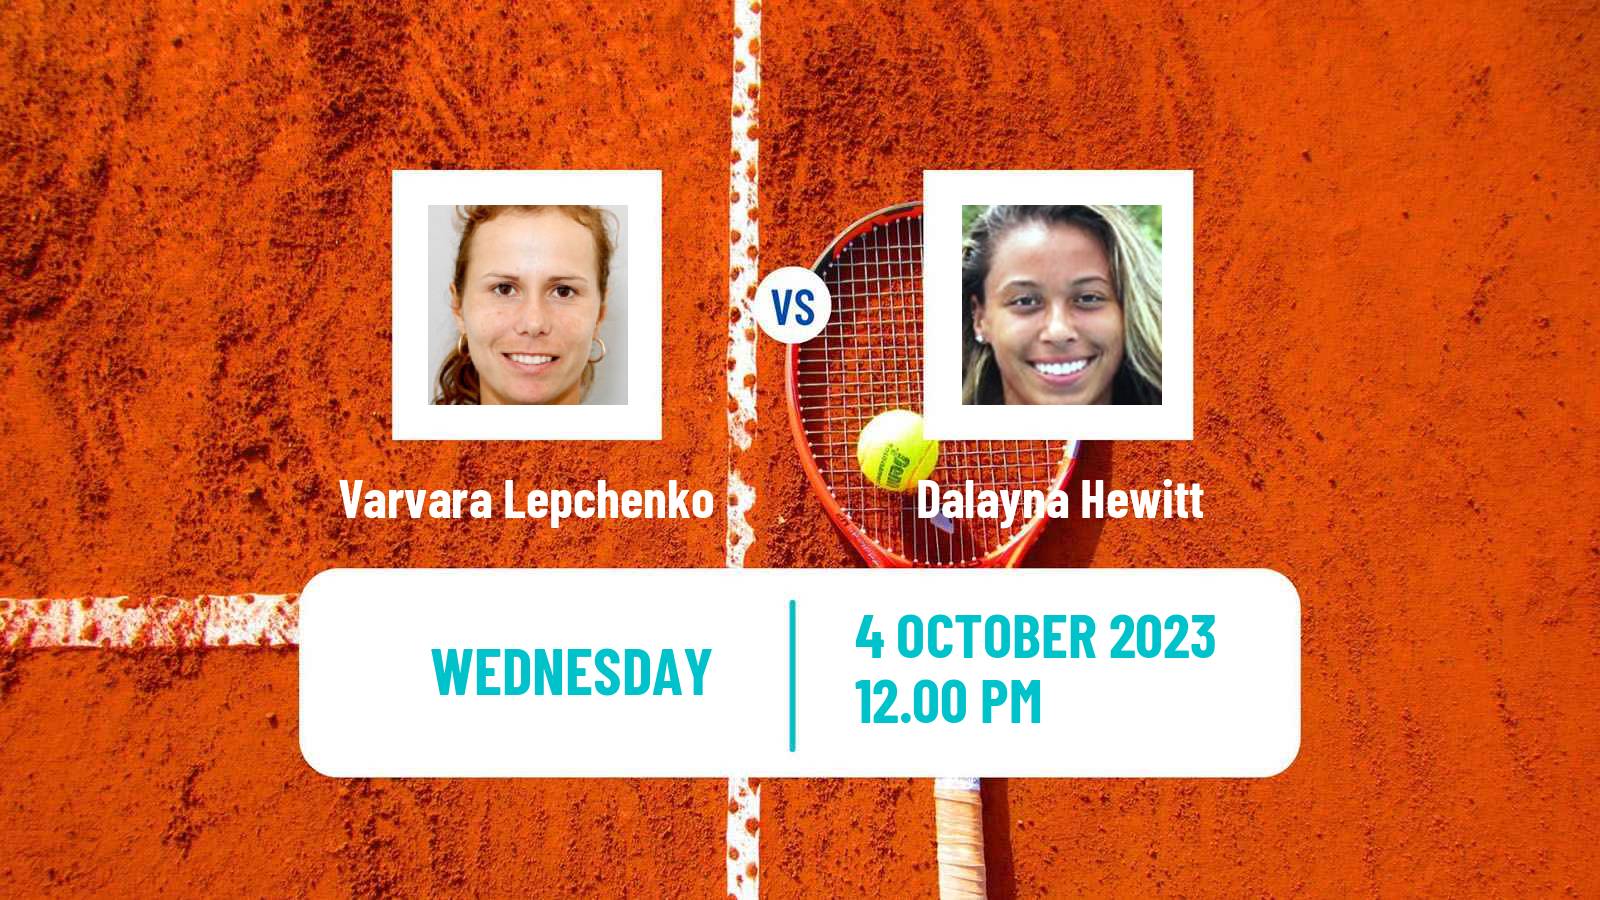 Tennis ITF W60 Rome Ga 2 Women Varvara Lepchenko - Dalayna Hewitt